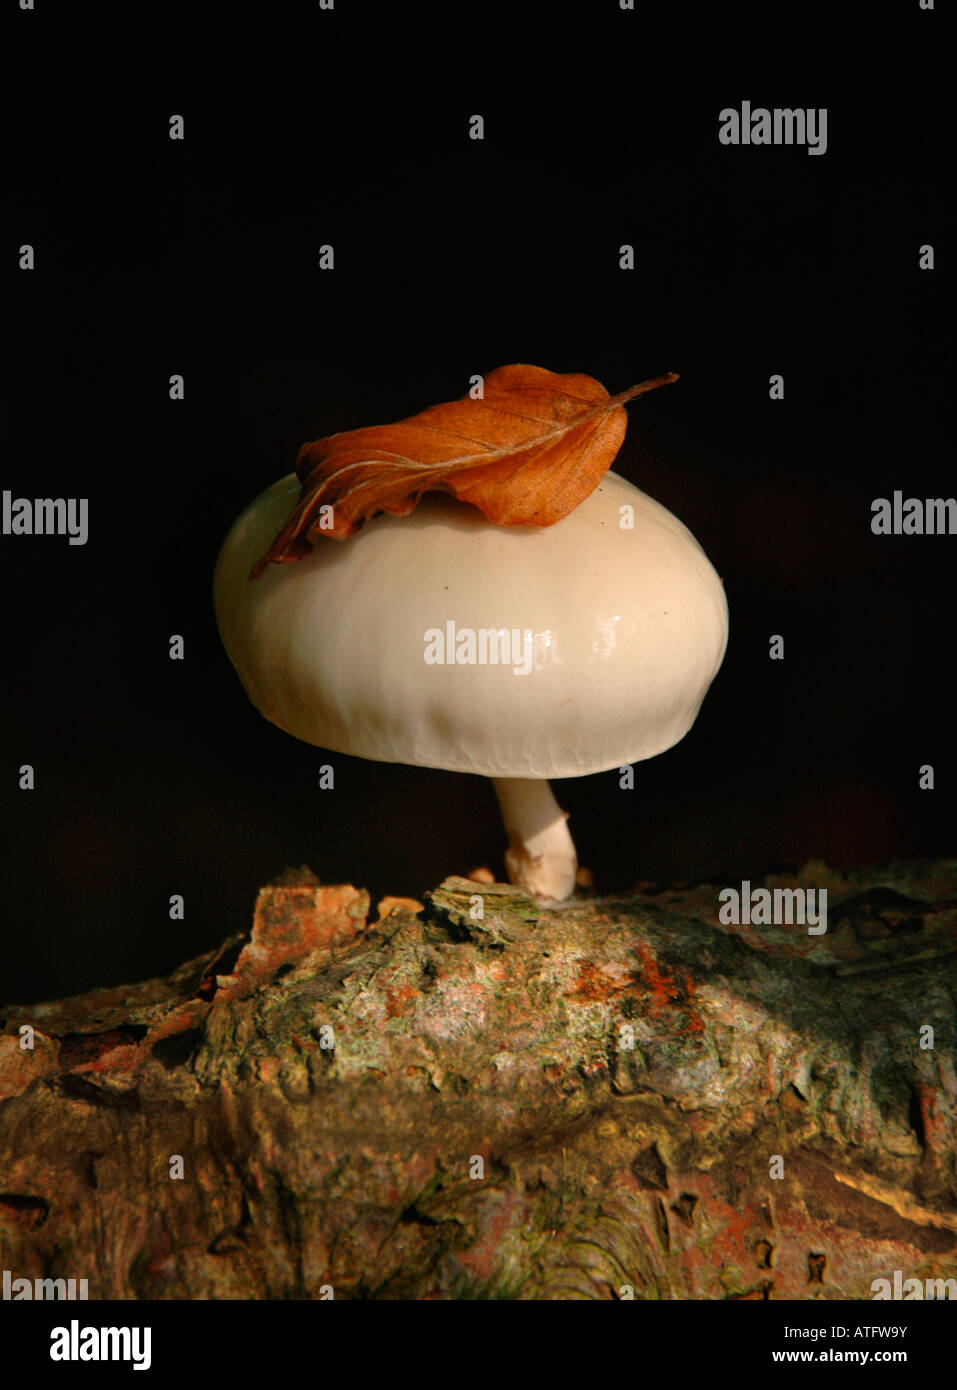 Ein Porzellan-Pilz wächst aus einem Zweig, gekrönt von einem gefallenen Buche Blatt. Stockfoto